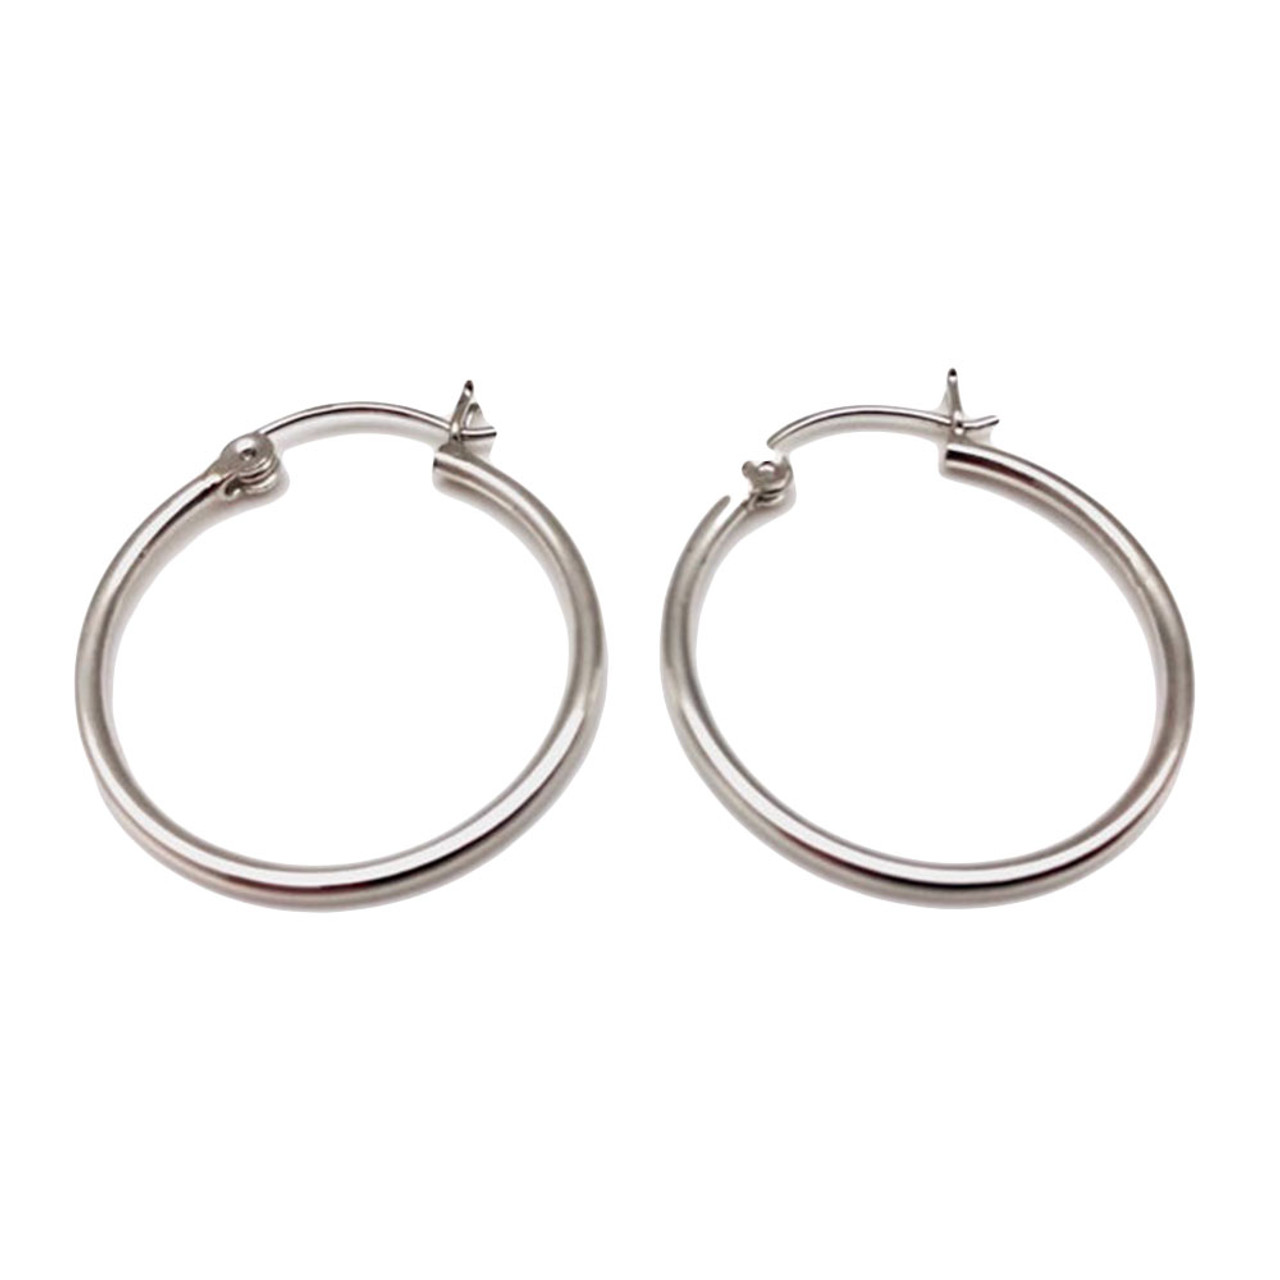 Stainless Steel Hoop Earrings  Dangle Earrings - A-z Earrings